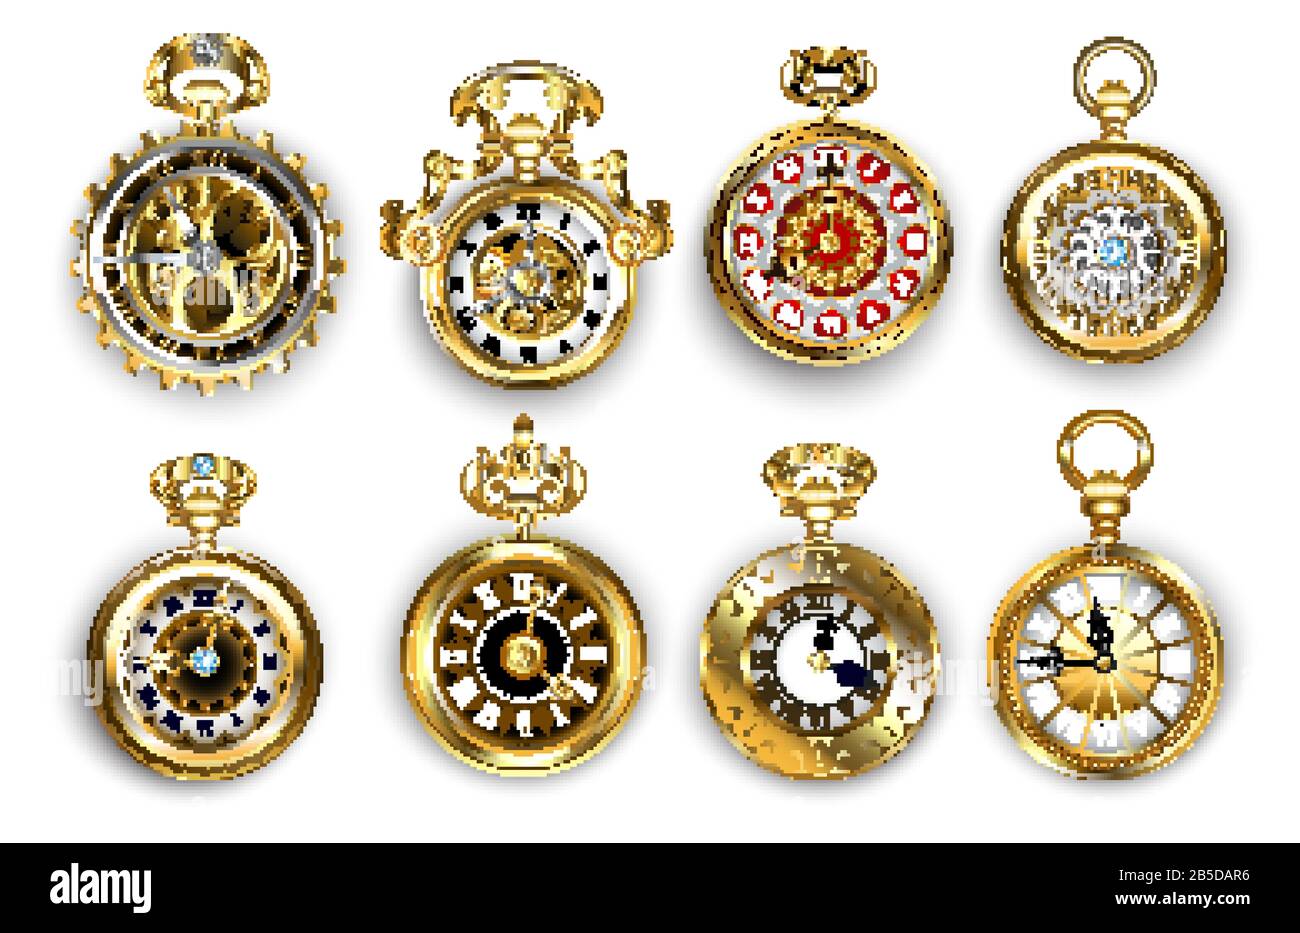 Ensemble de montres anciennes, bijoux, anciennes, dorées, décorées de motifs et de pignons en laiton sur fond blanc. Style Steampunk. Montre de poche vintage. Illustration de Vecteur